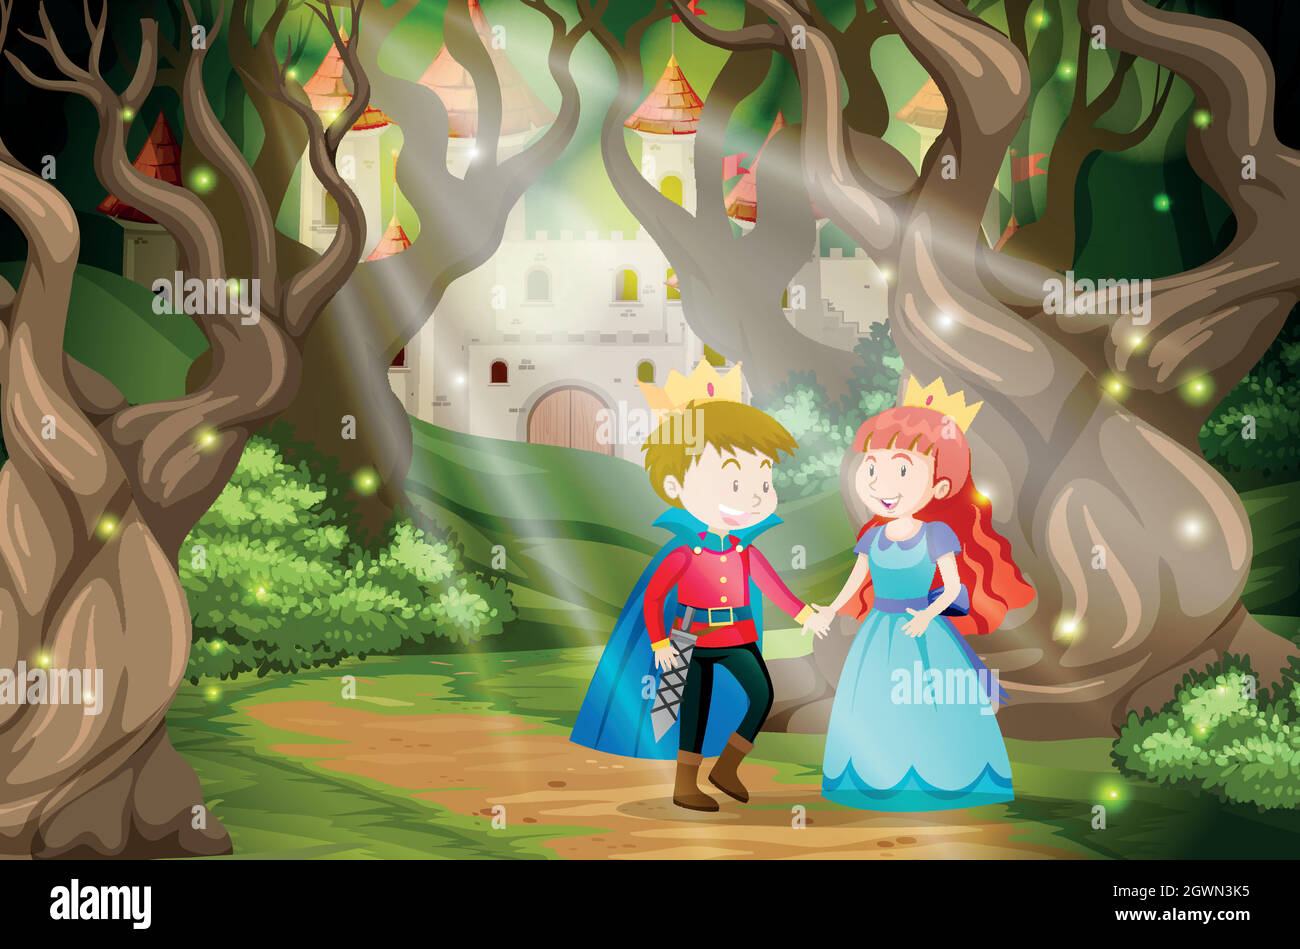 Prince et princesse dans le monde imaginaire Illustration de Vecteur